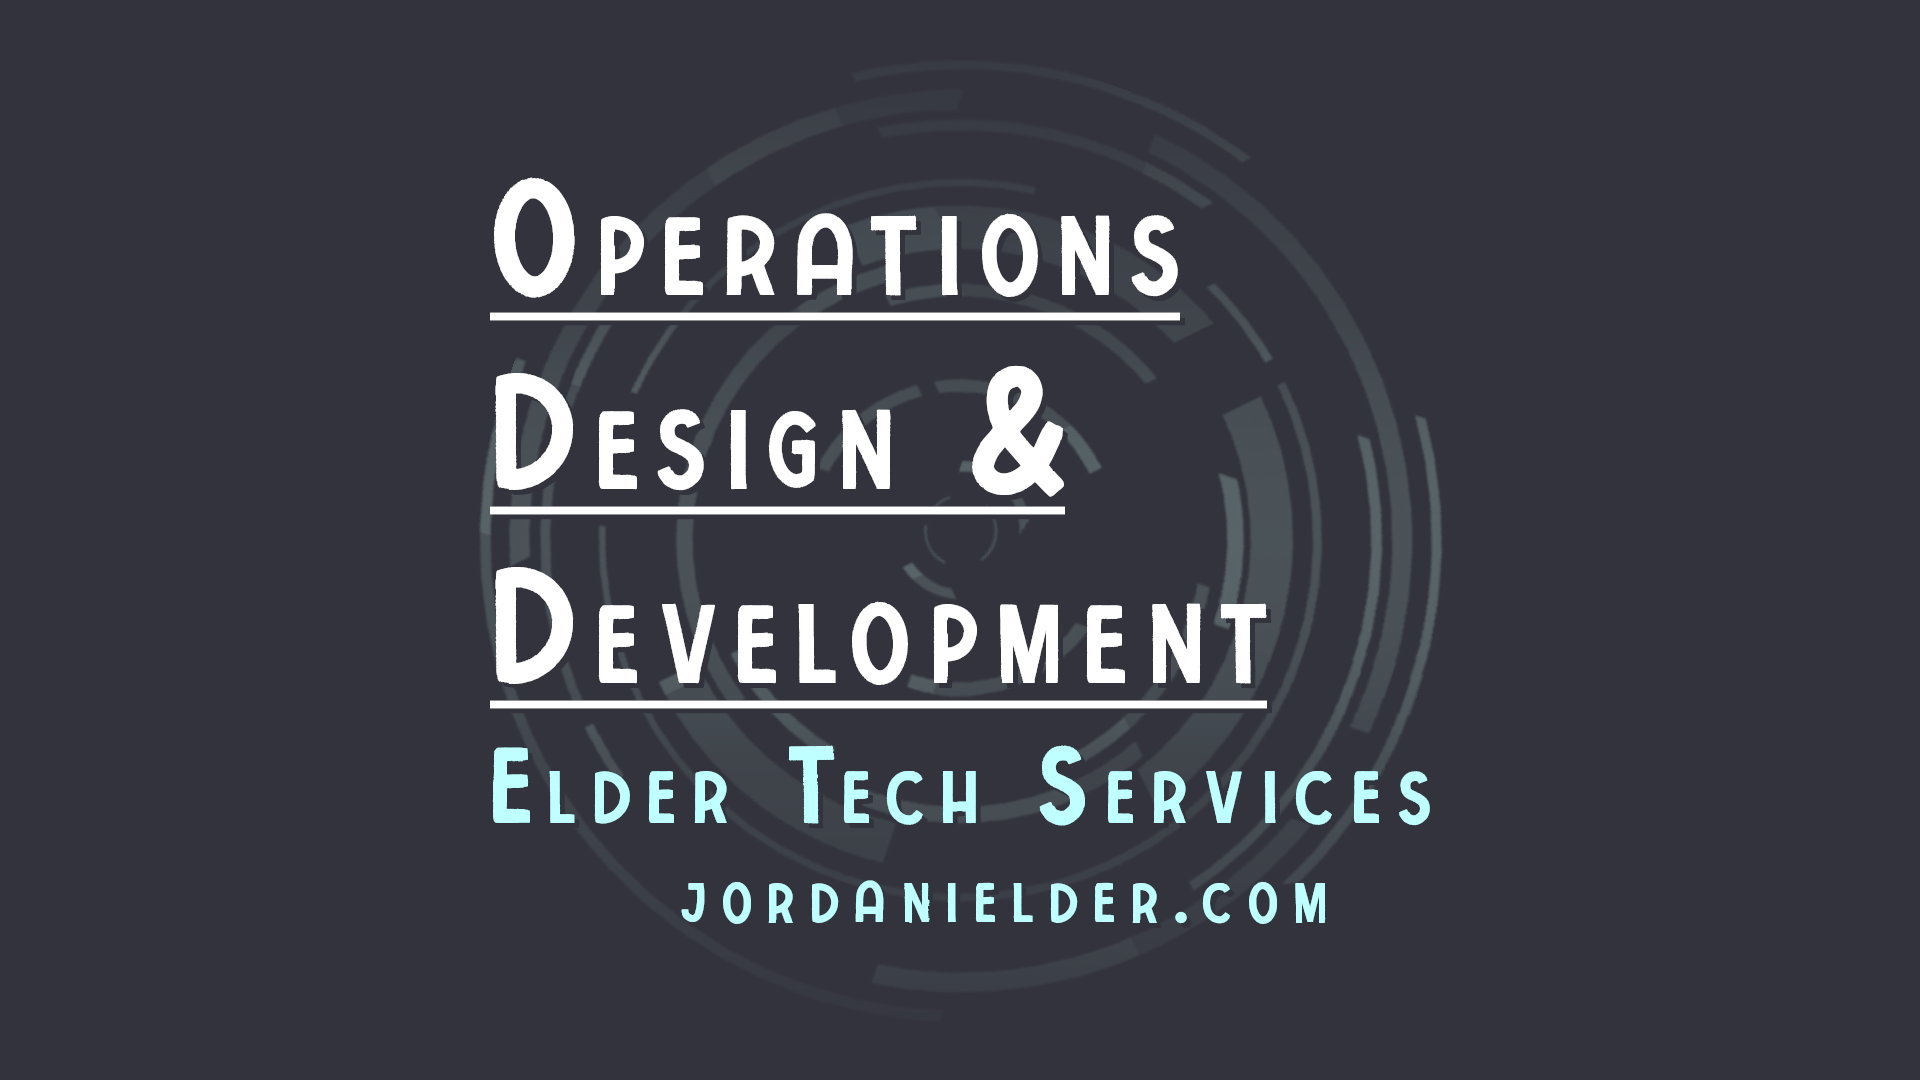 Contact Jordan Elder for Tech Services